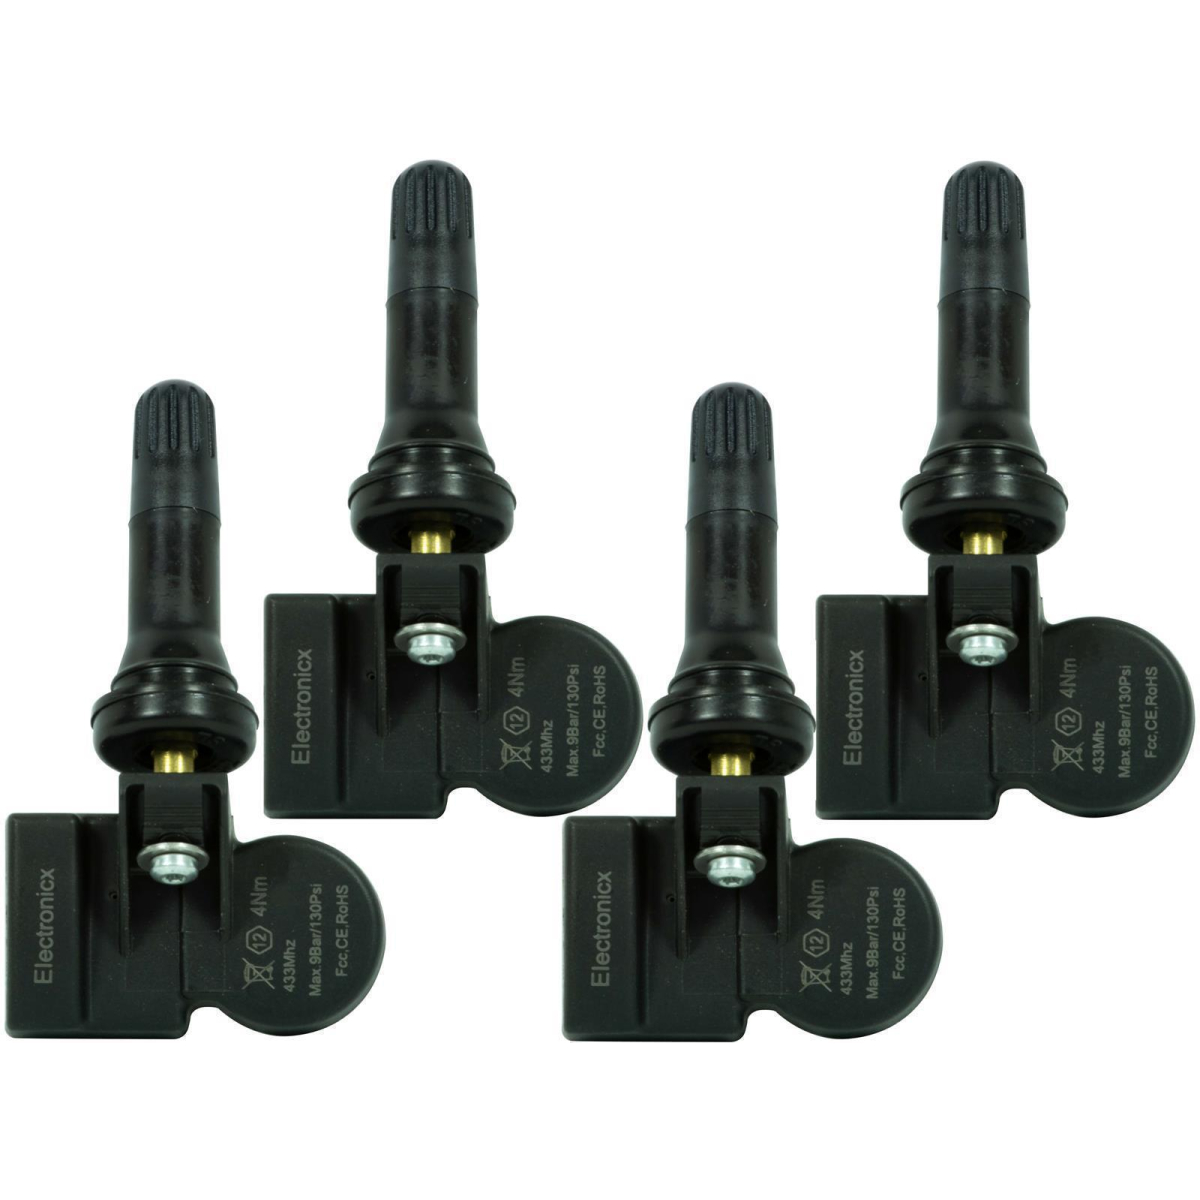 4 tire pressure sensors rdks sensors rubber valve for Opel/Vauxhall Corsa D 11.2011-12.2019